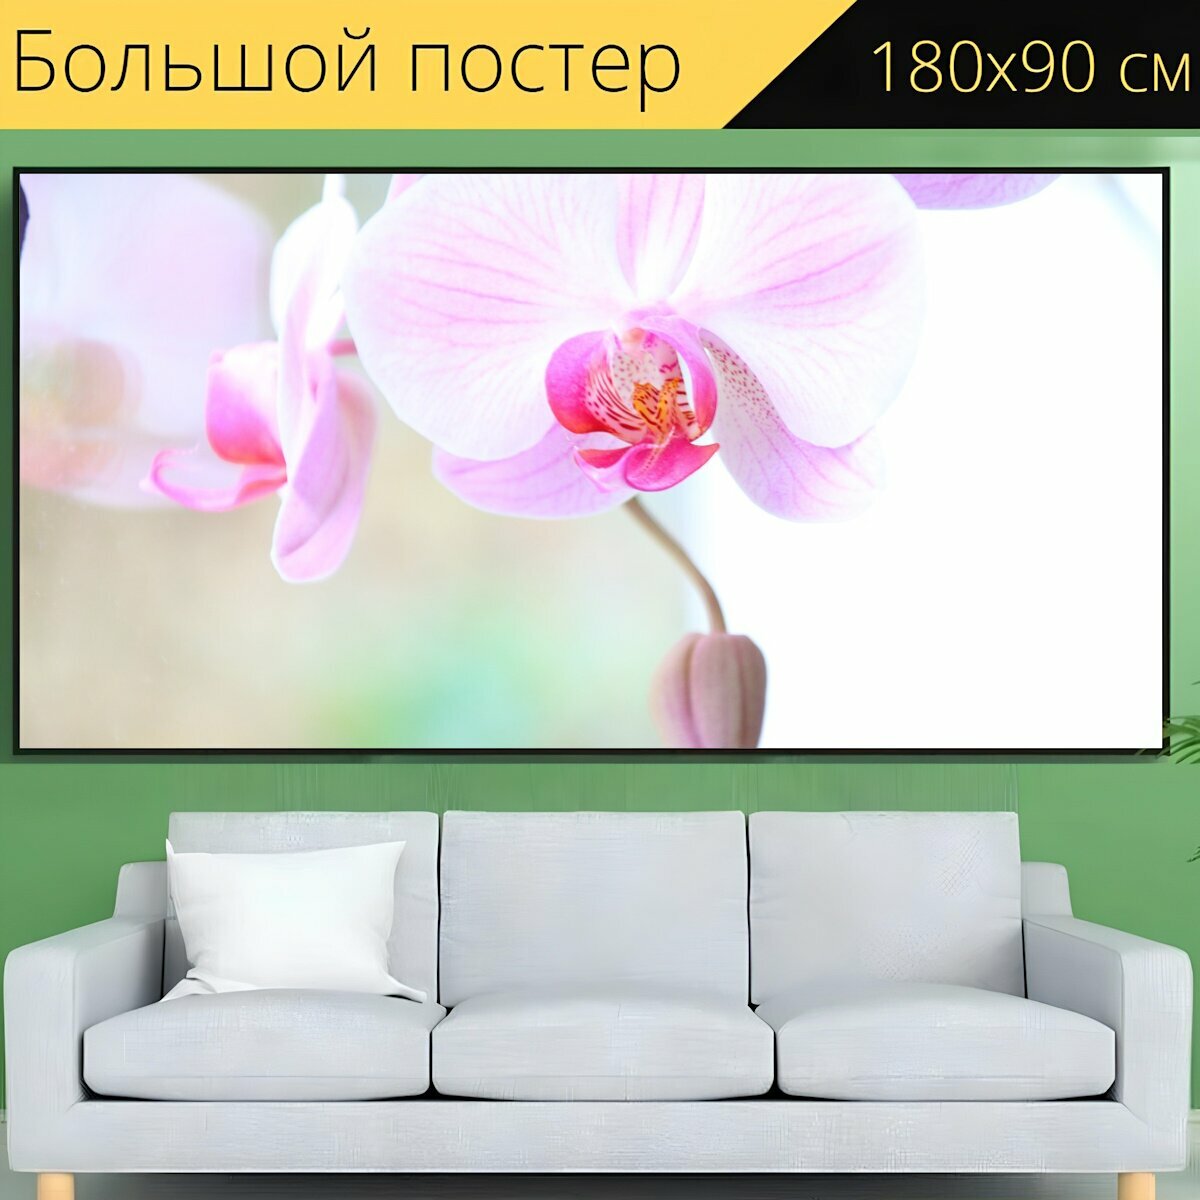 Большой постер "Орхидея, яркий, цвести" 180 x 90 см. для интерьера